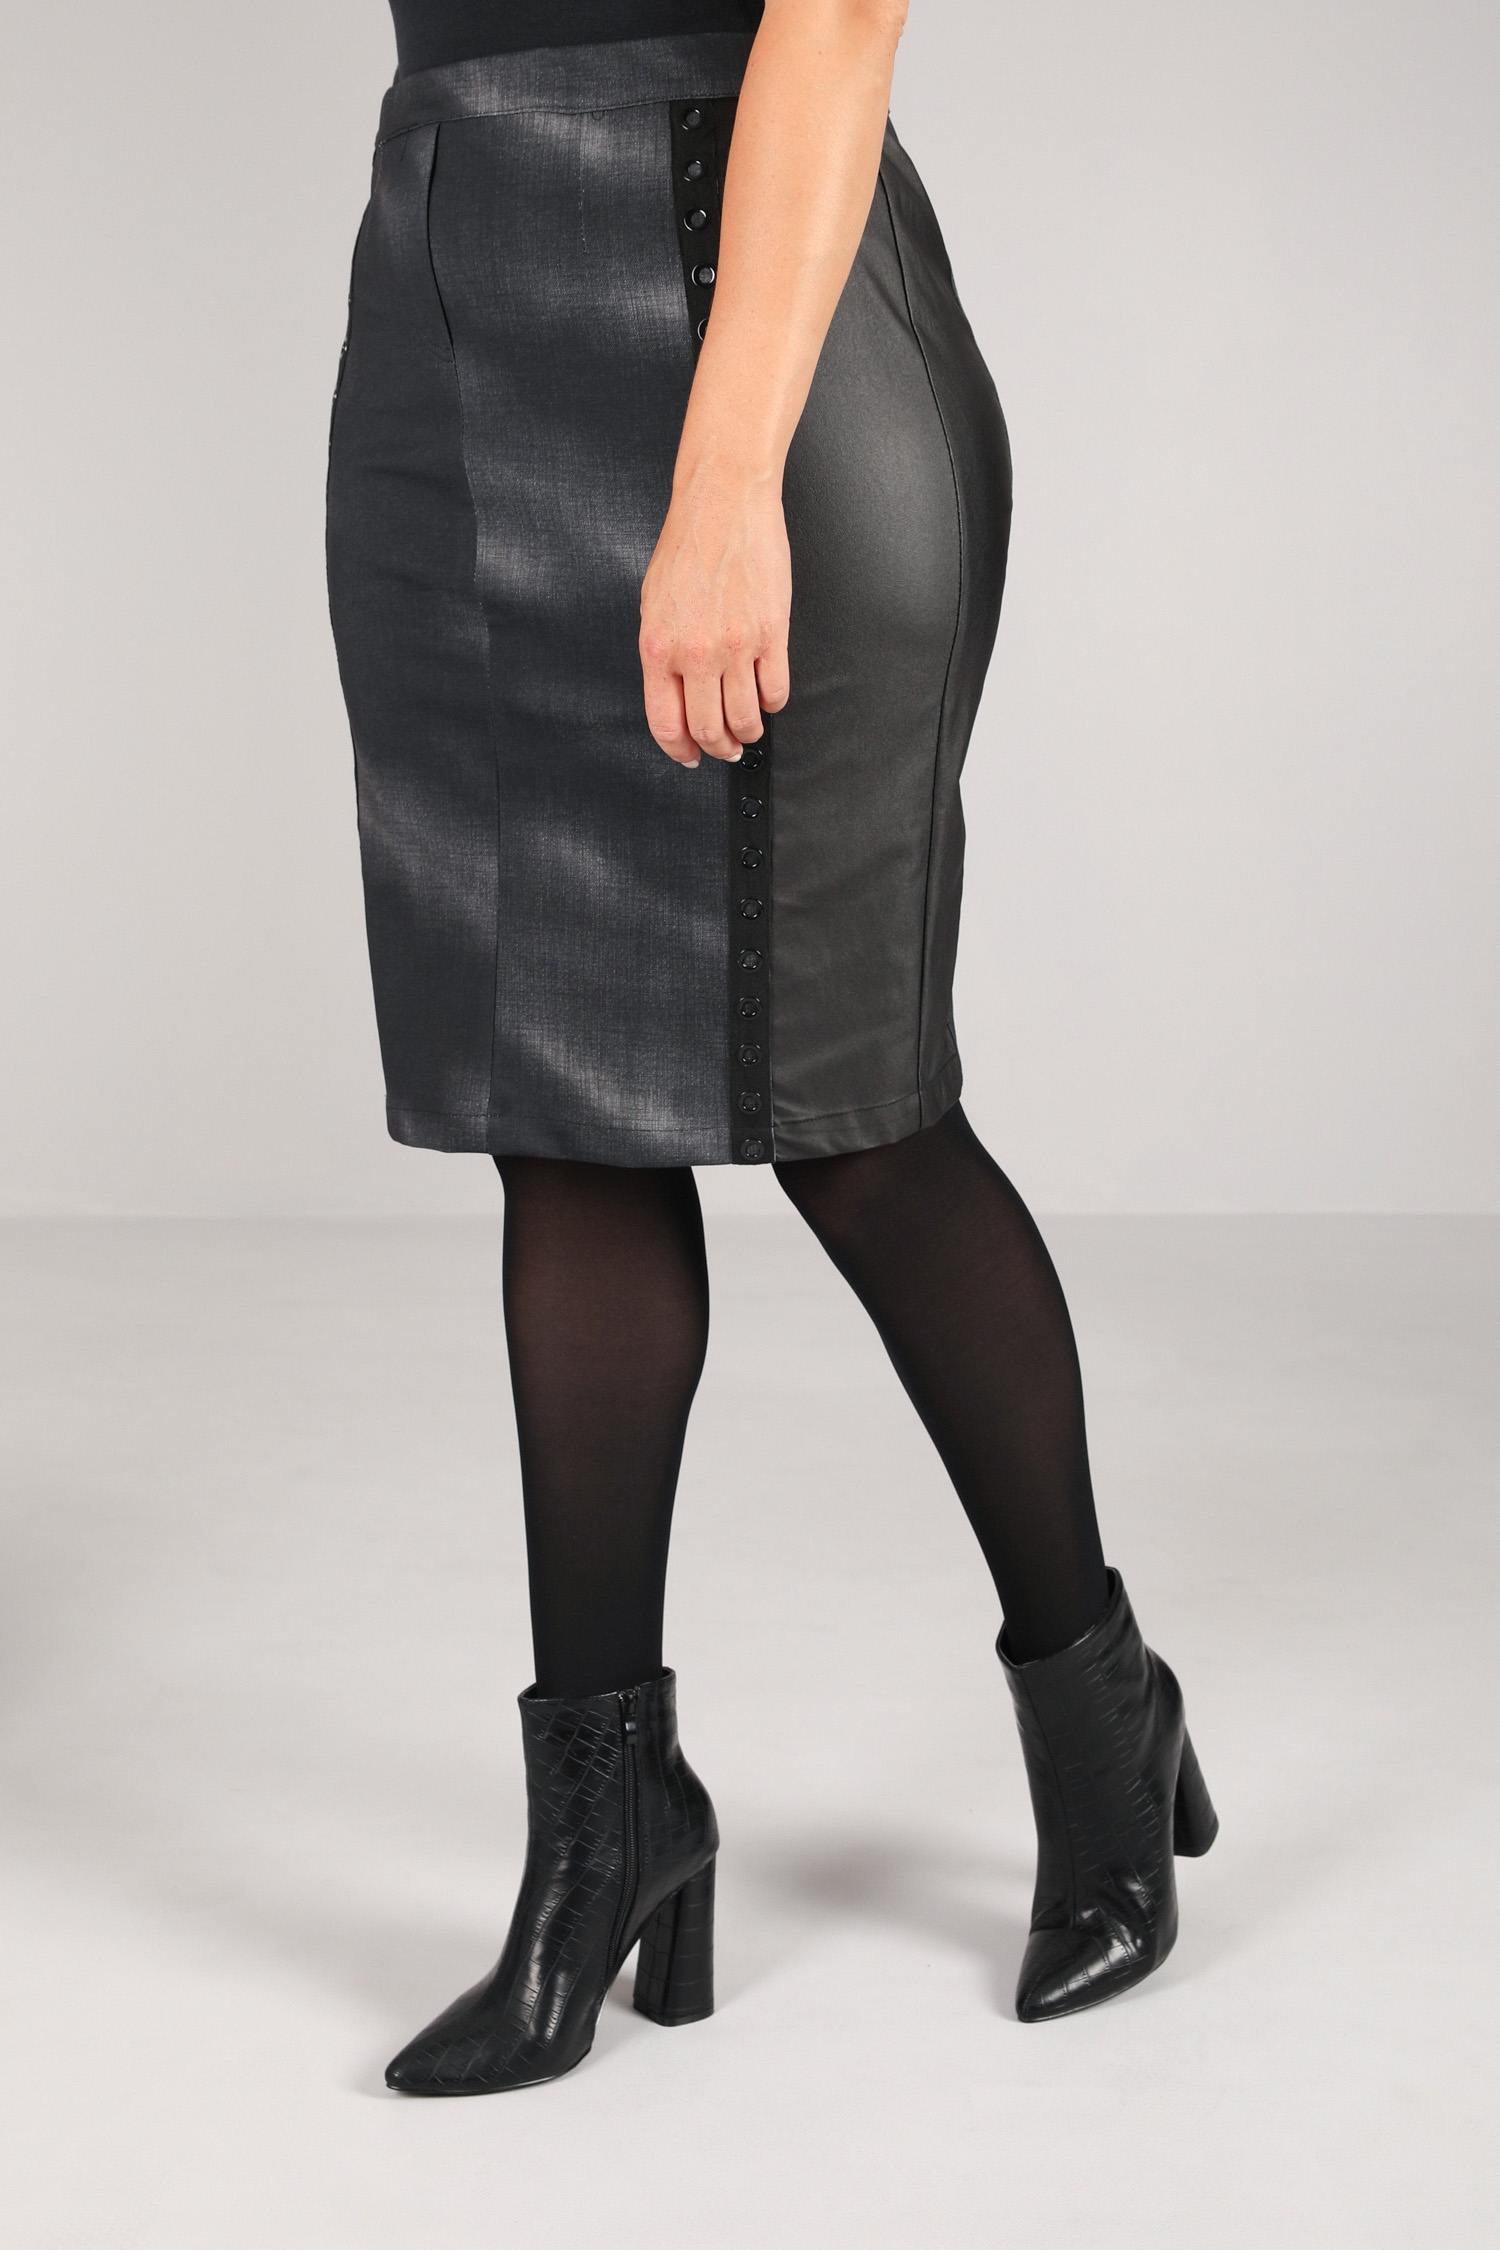 Bi-material straight skirt